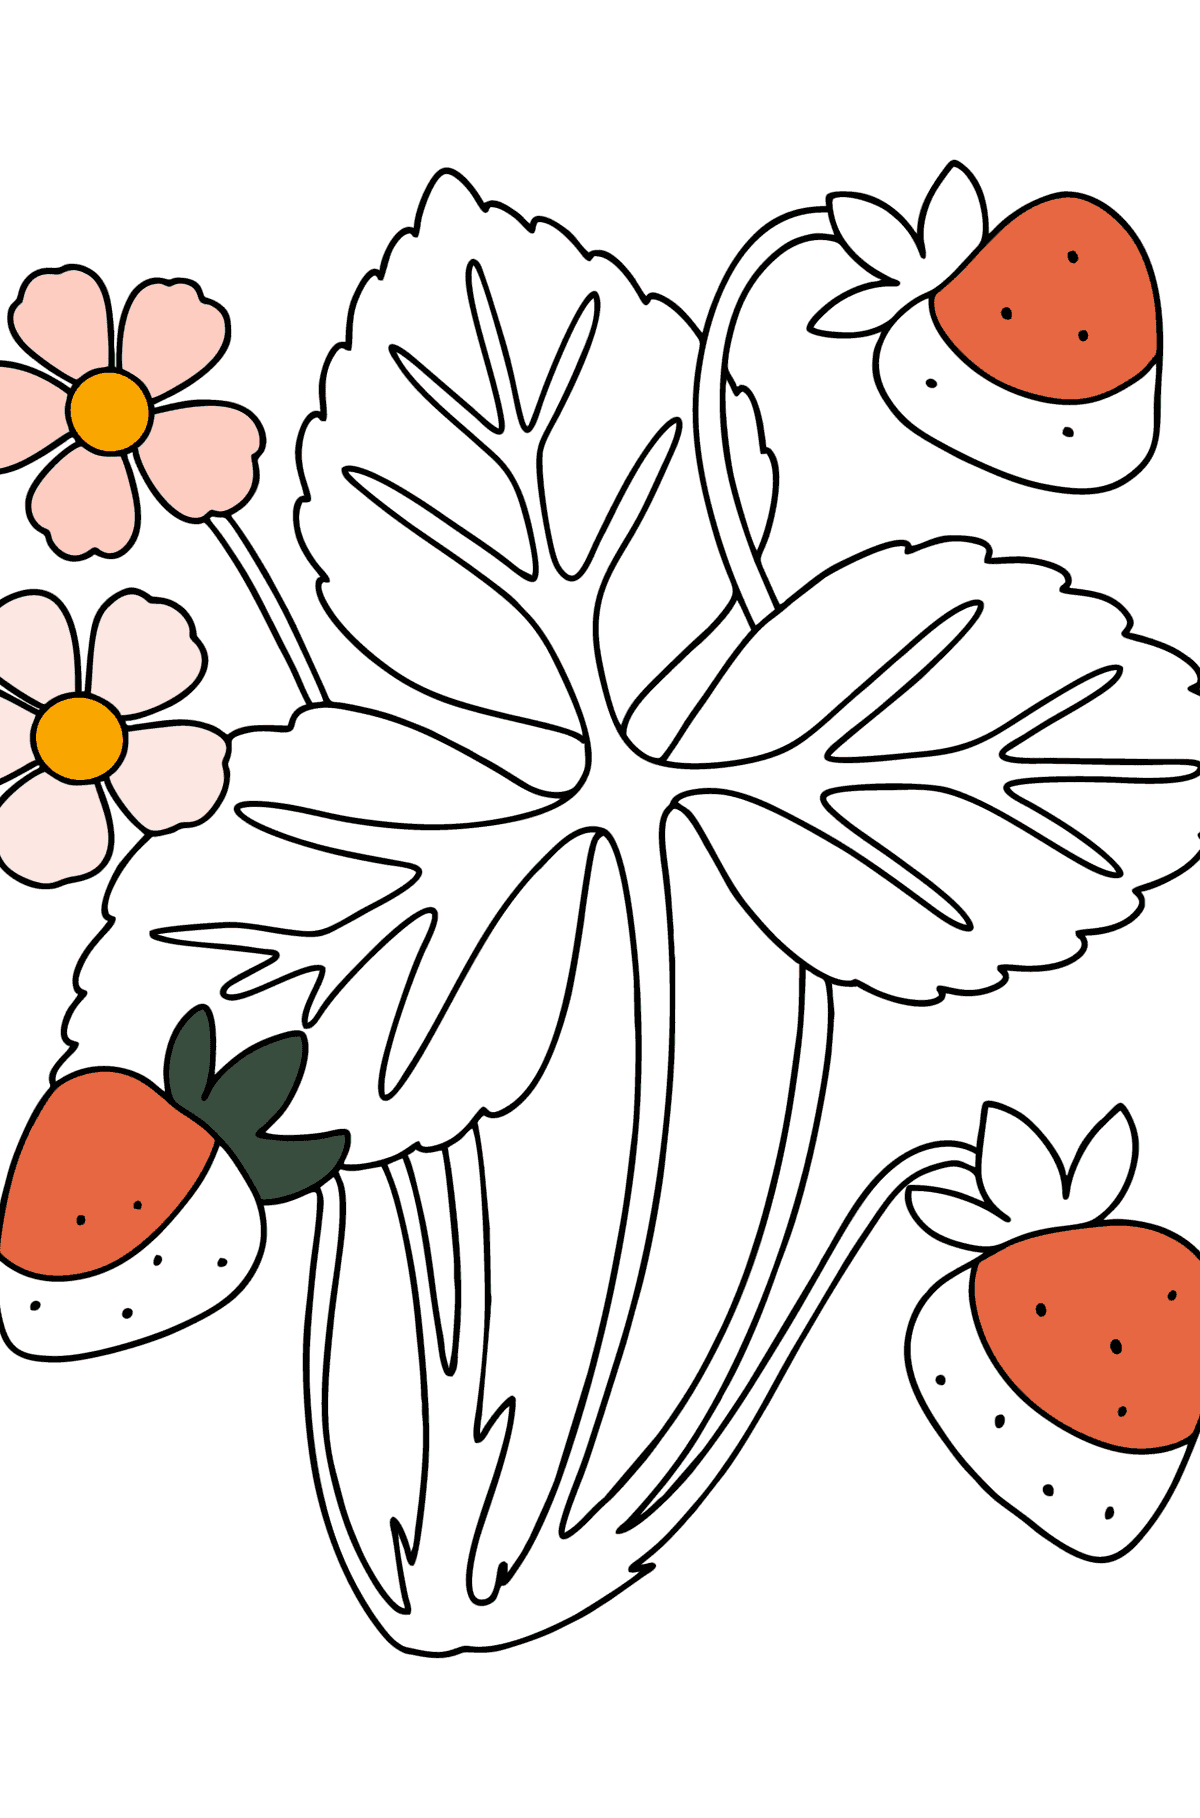 Dibujo Arbusto de fresa para colorear - Dibujos para Colorear para Niños